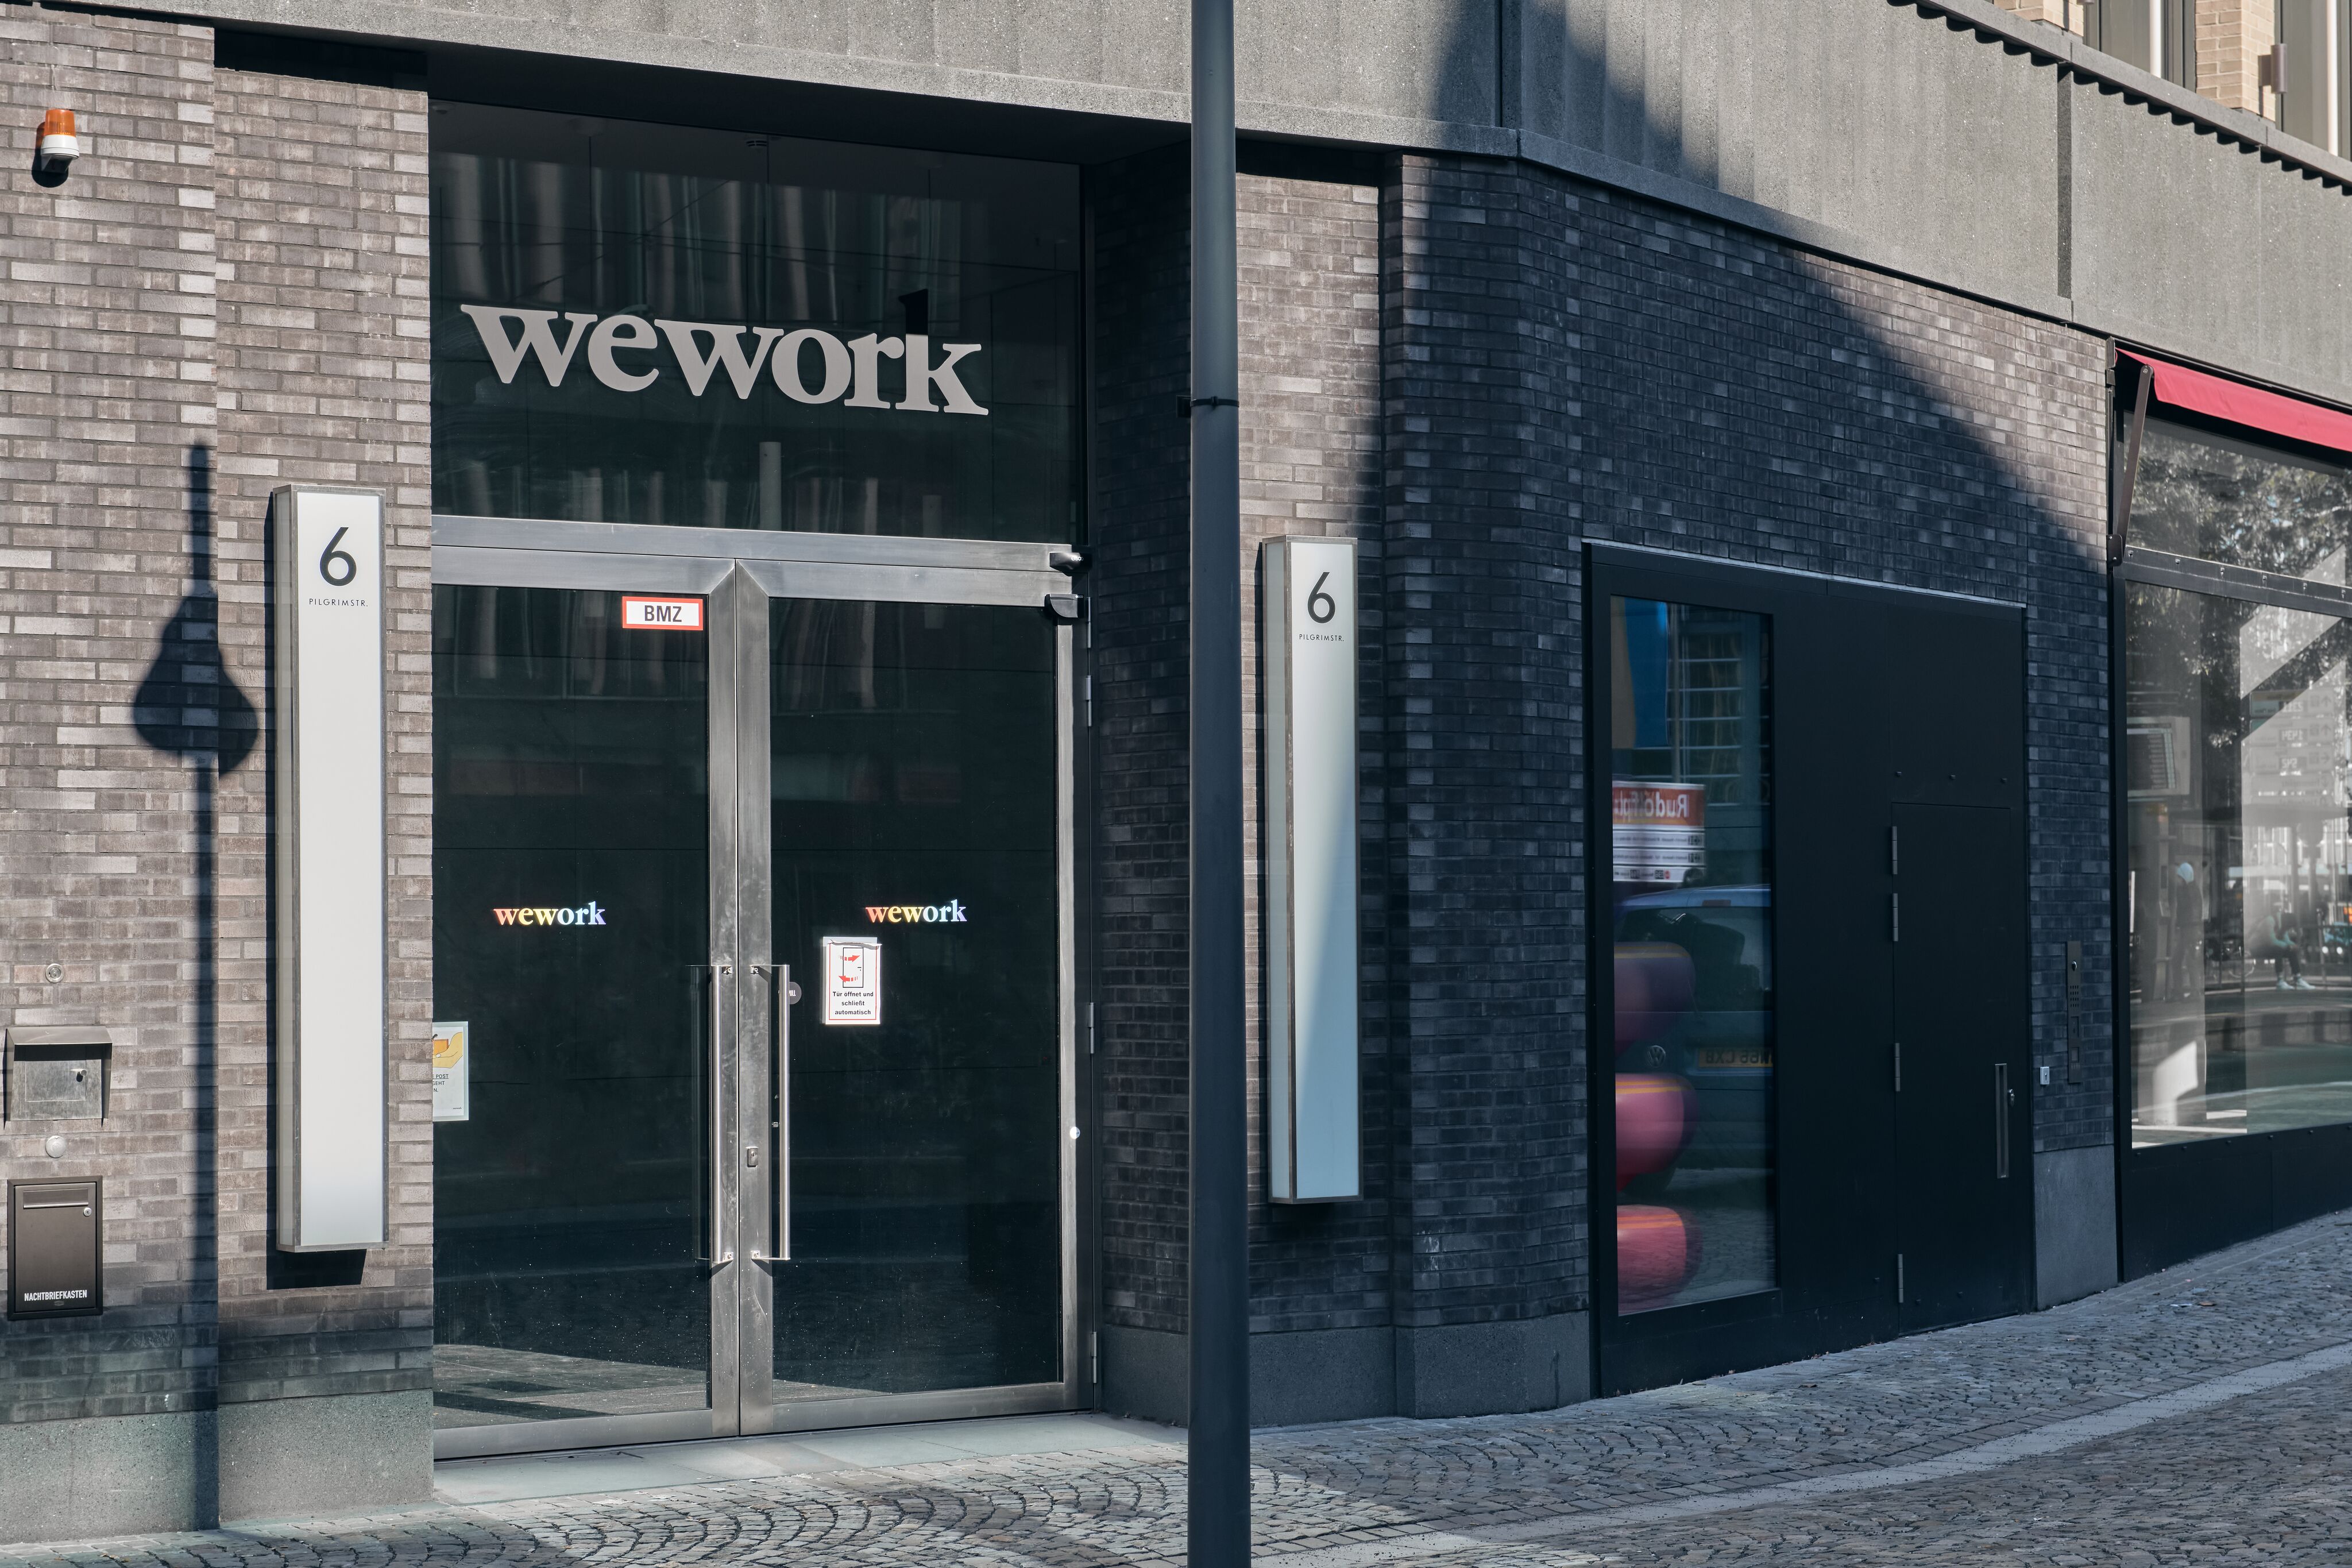 WeWork Wallarkaden, Pilgrimstrasse 6 in Cologne